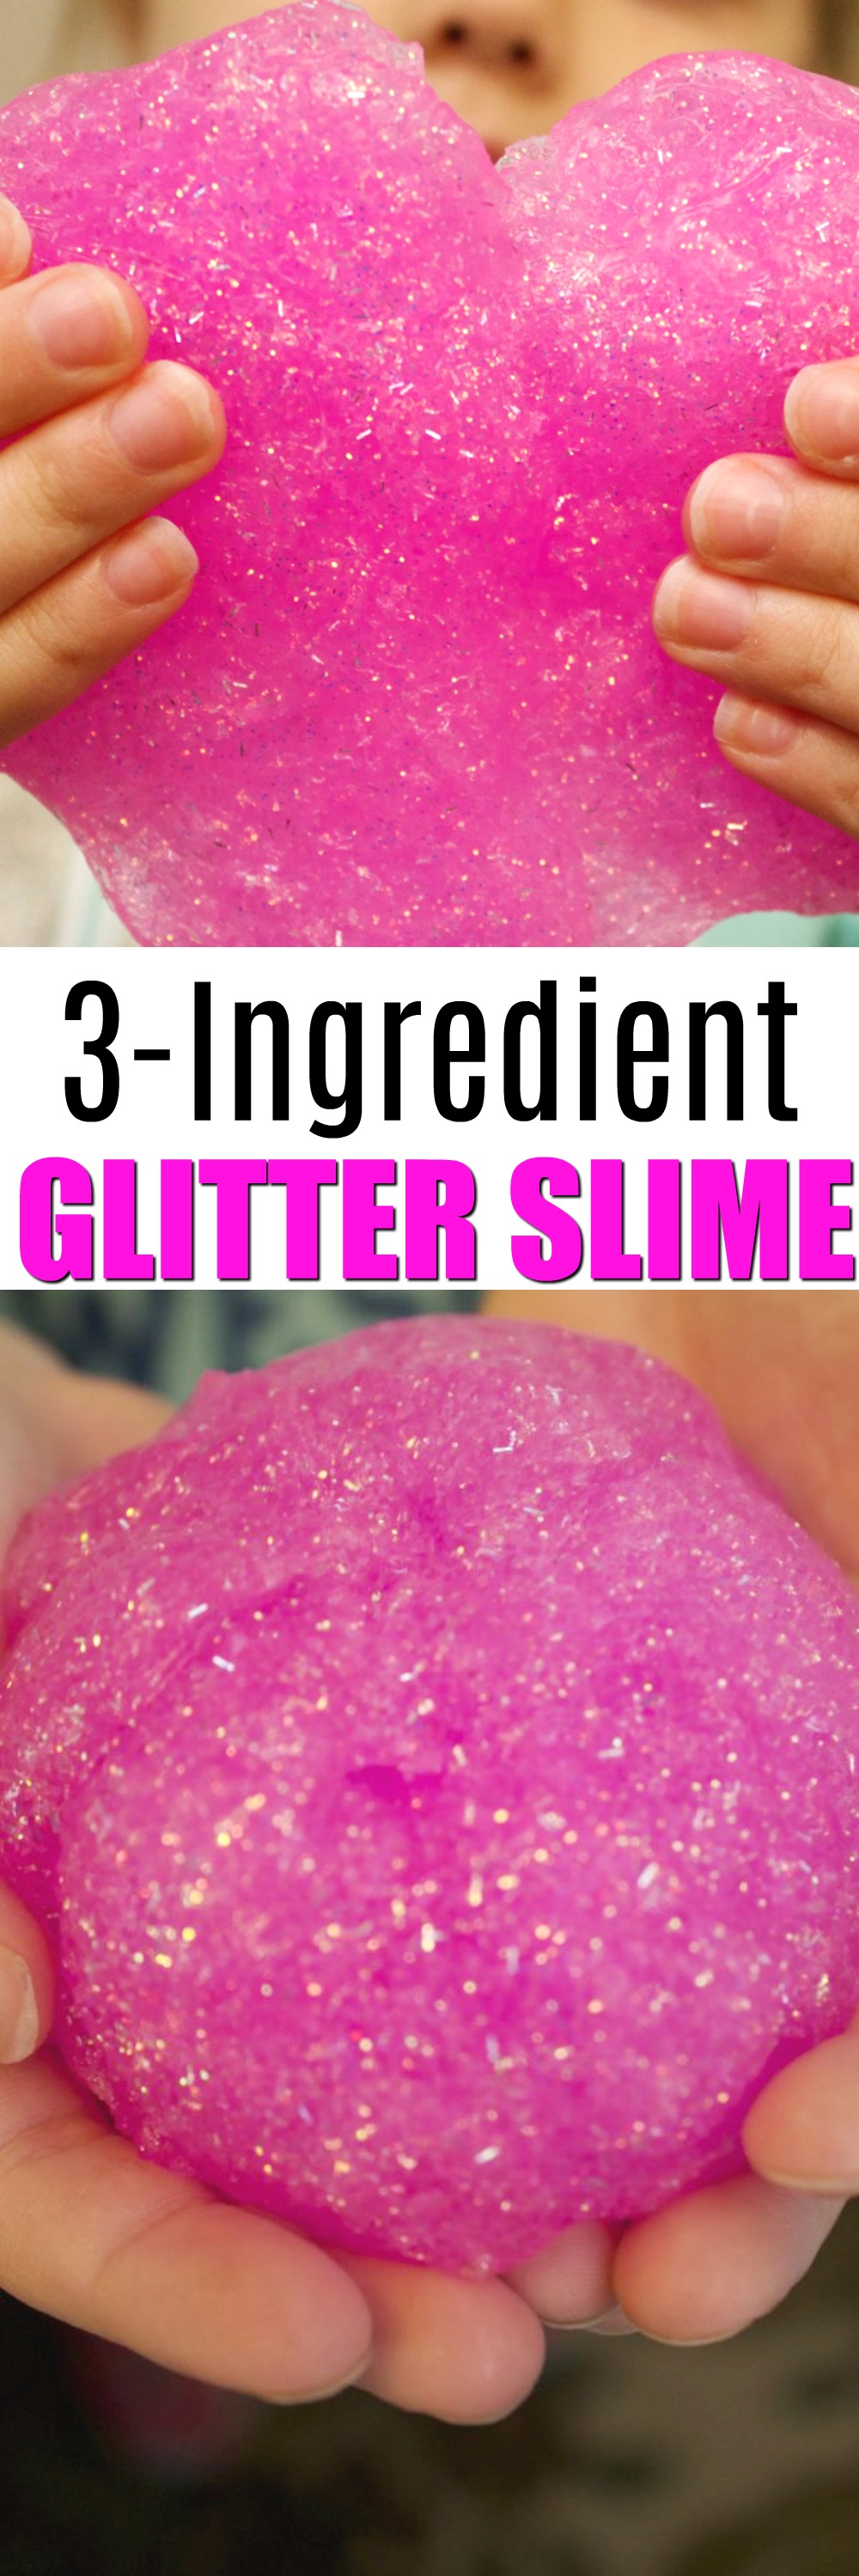 3 ingredient glitter slime